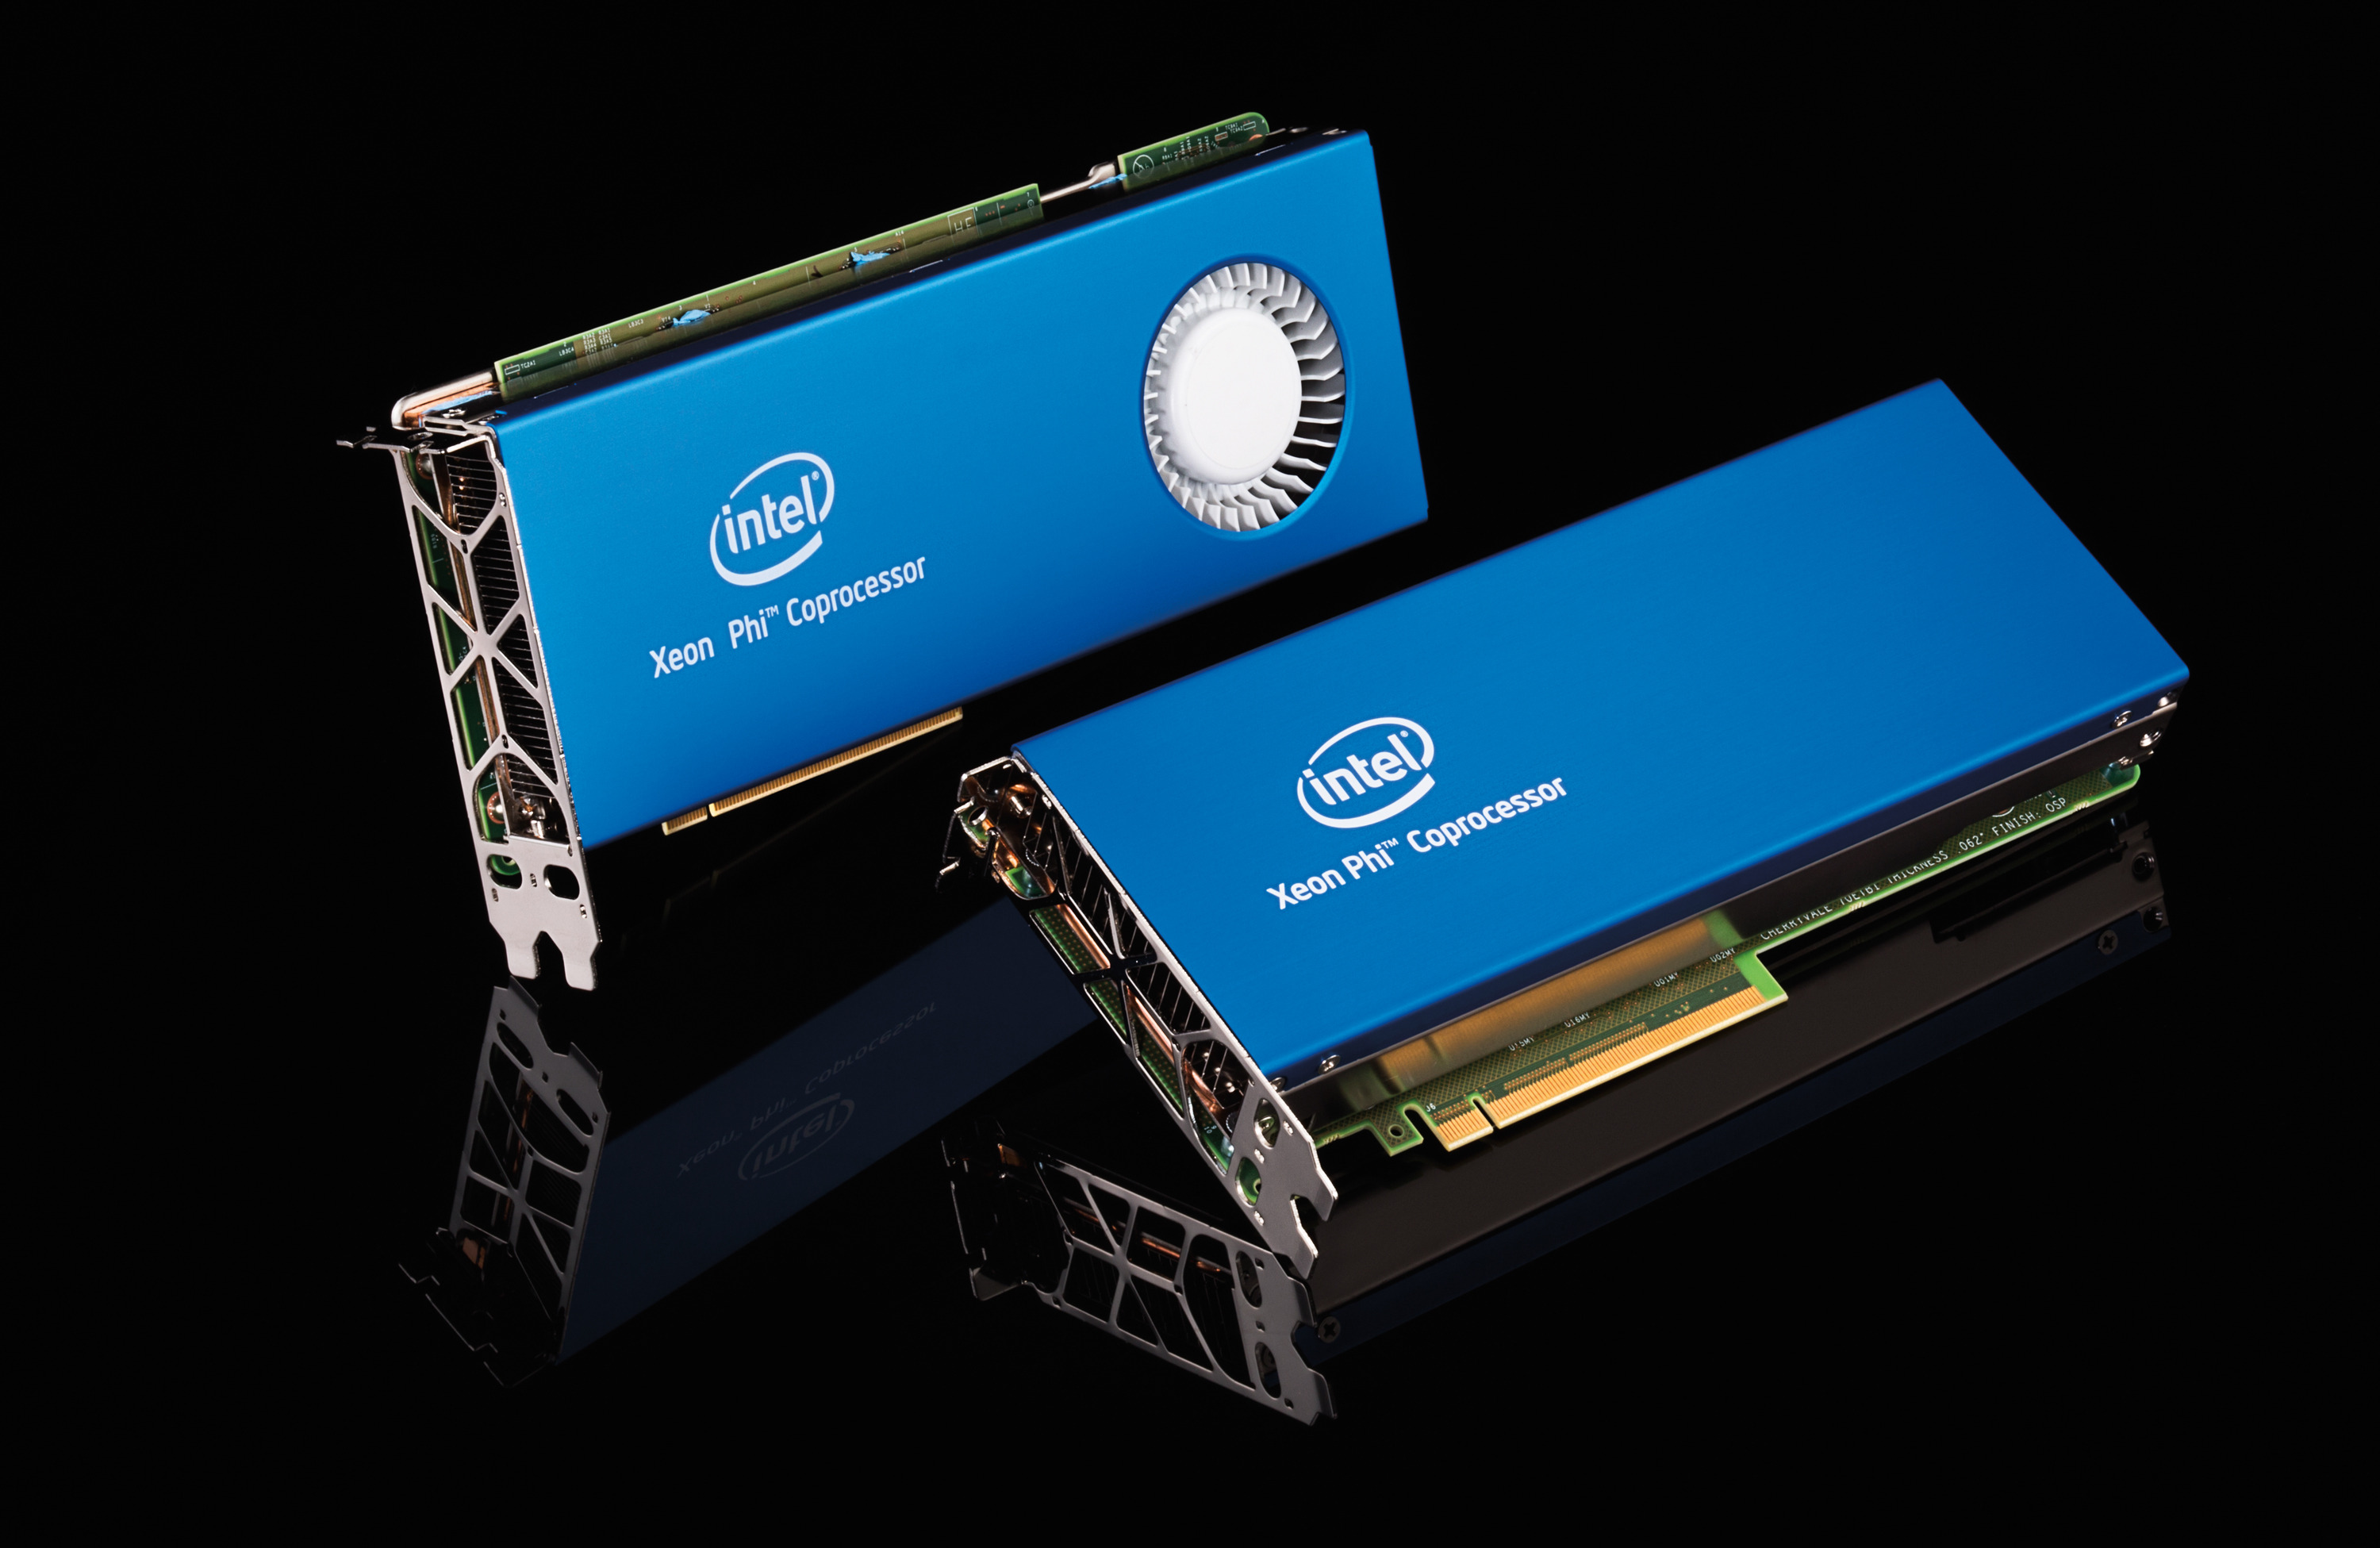 8 Intel Xeon Phi 7120